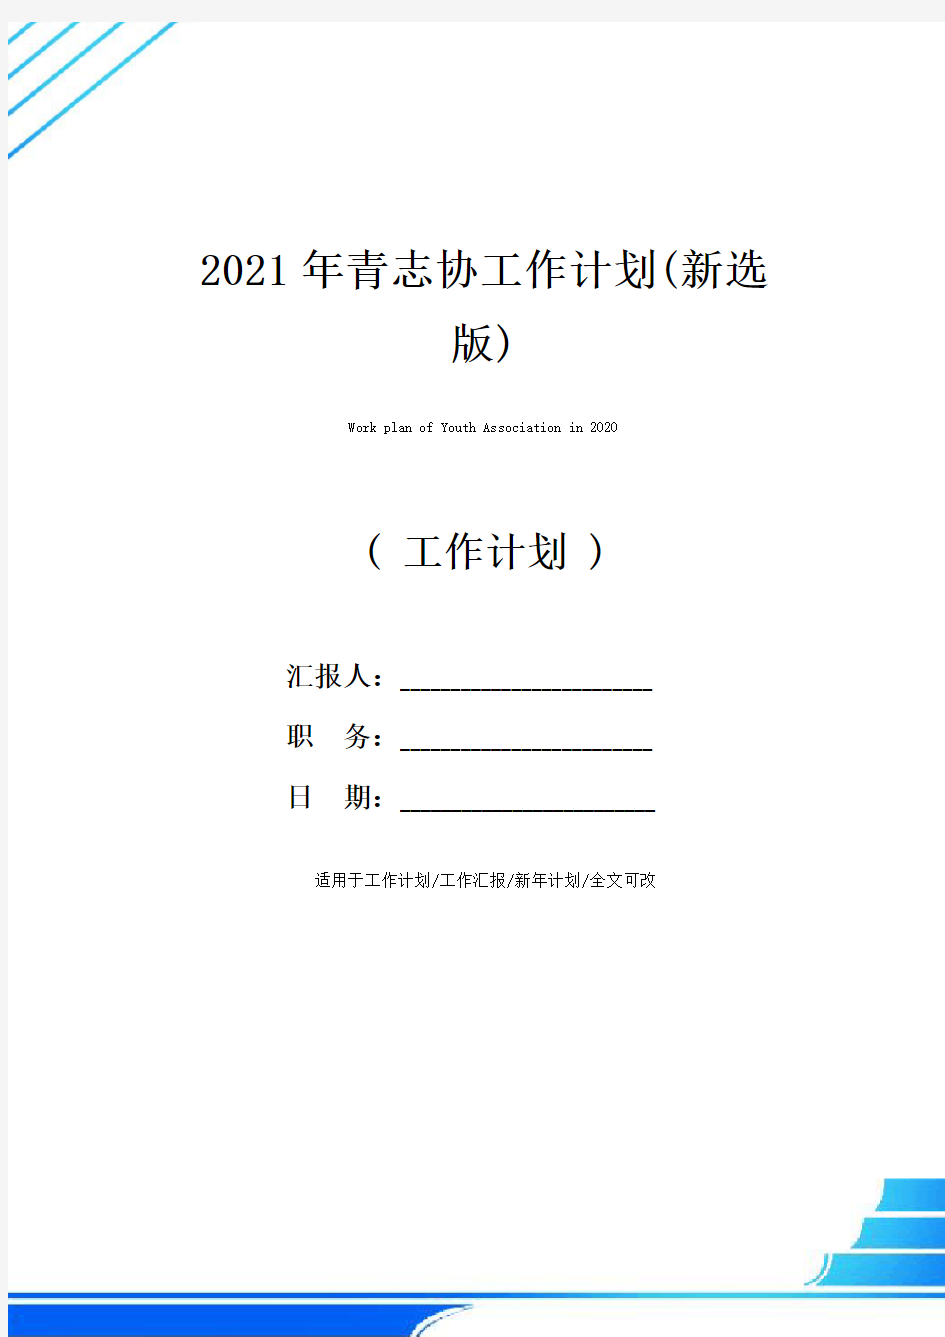 2021年青志协工作计划(新选版)